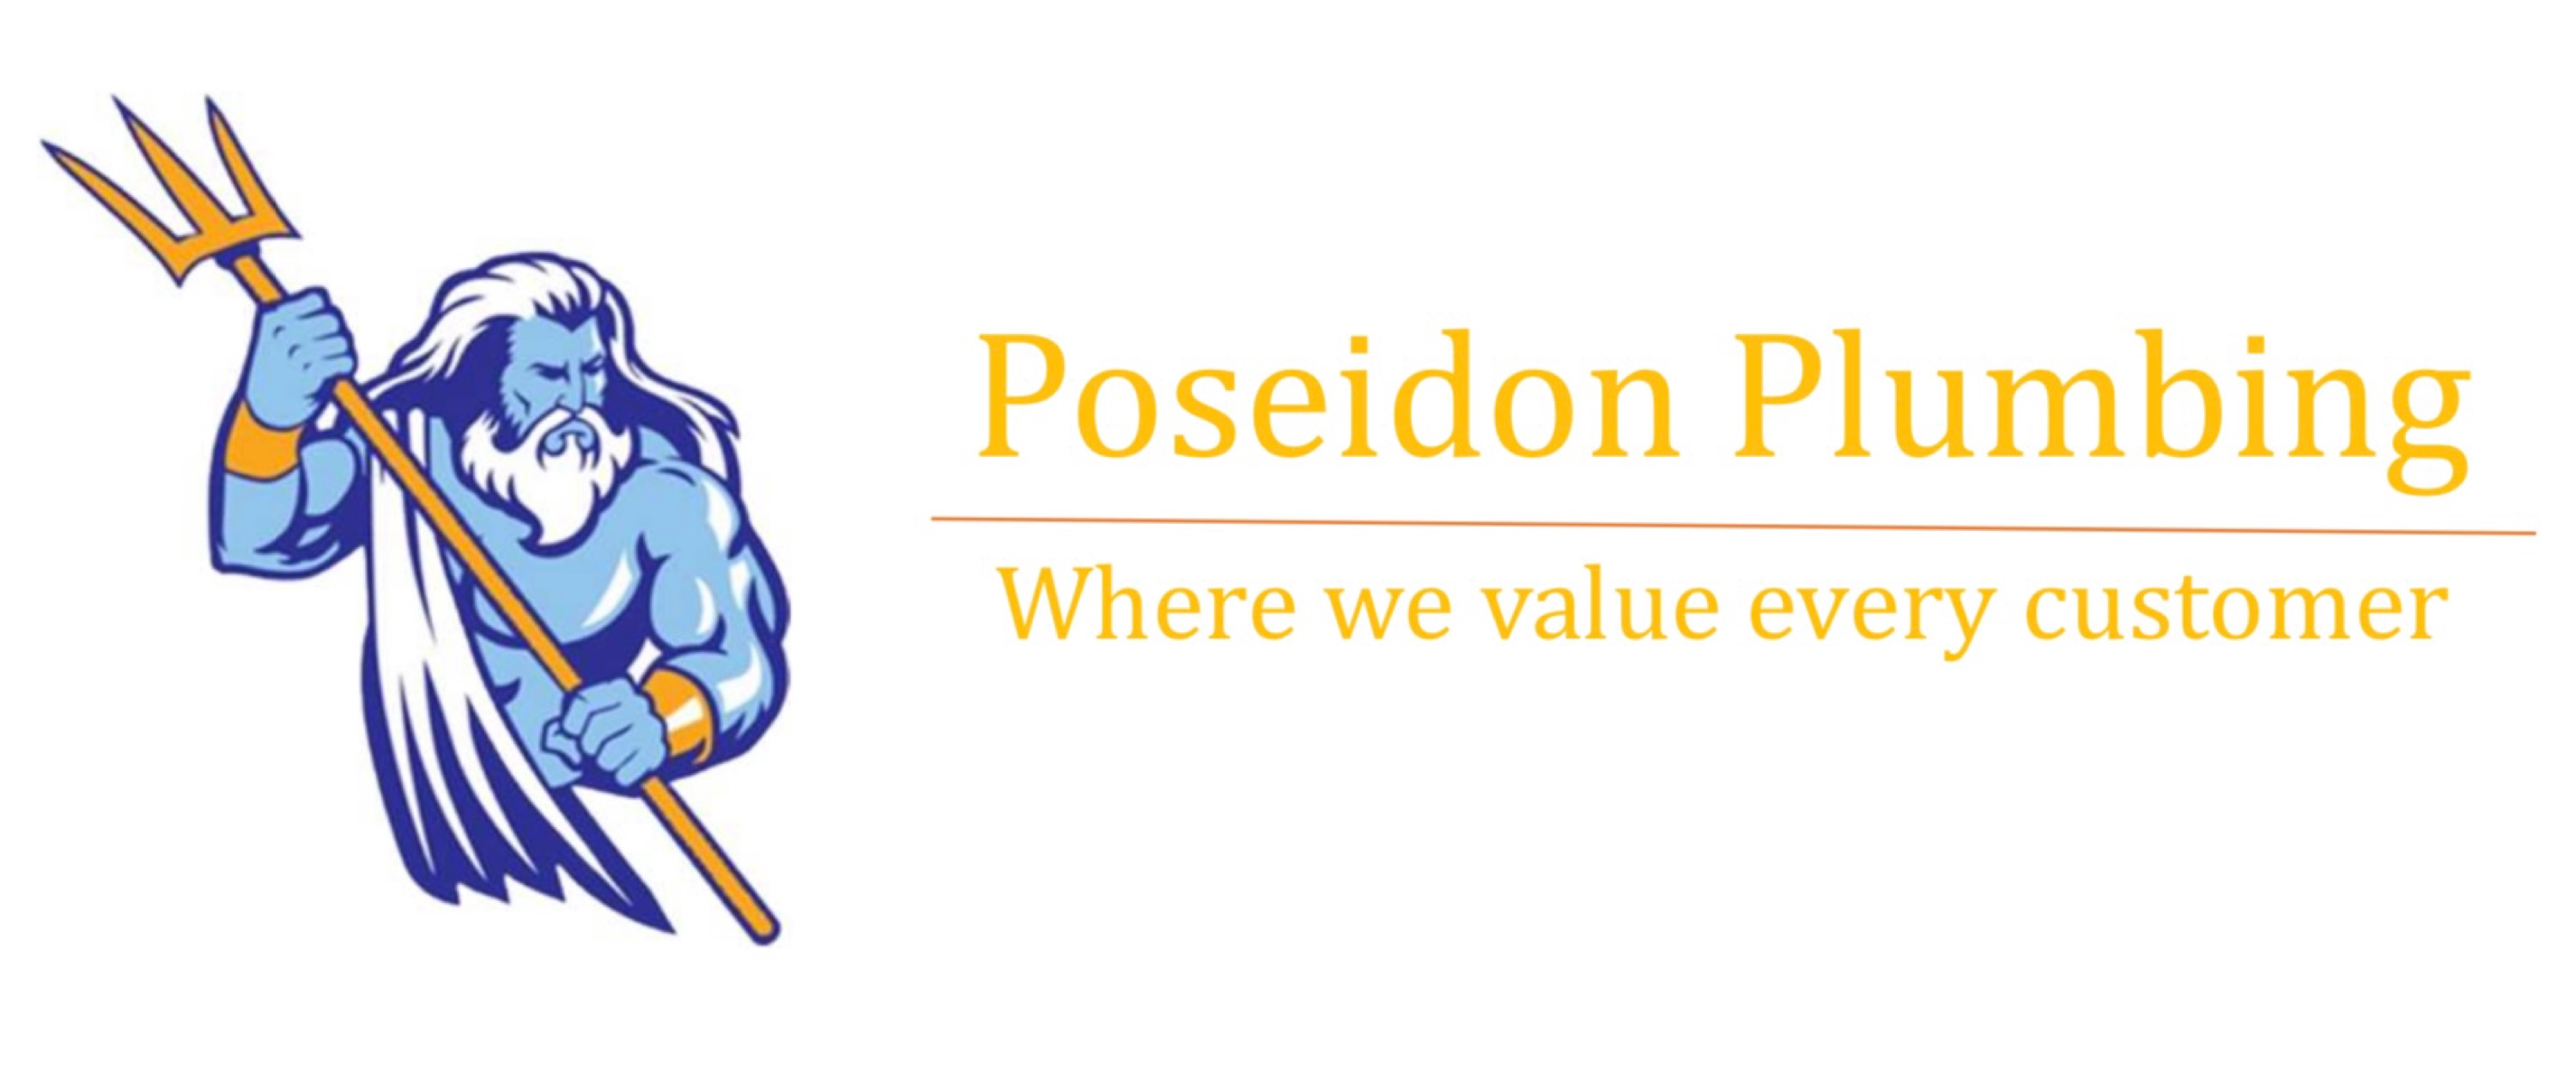 Poseidon Plumbing Solutions Logo